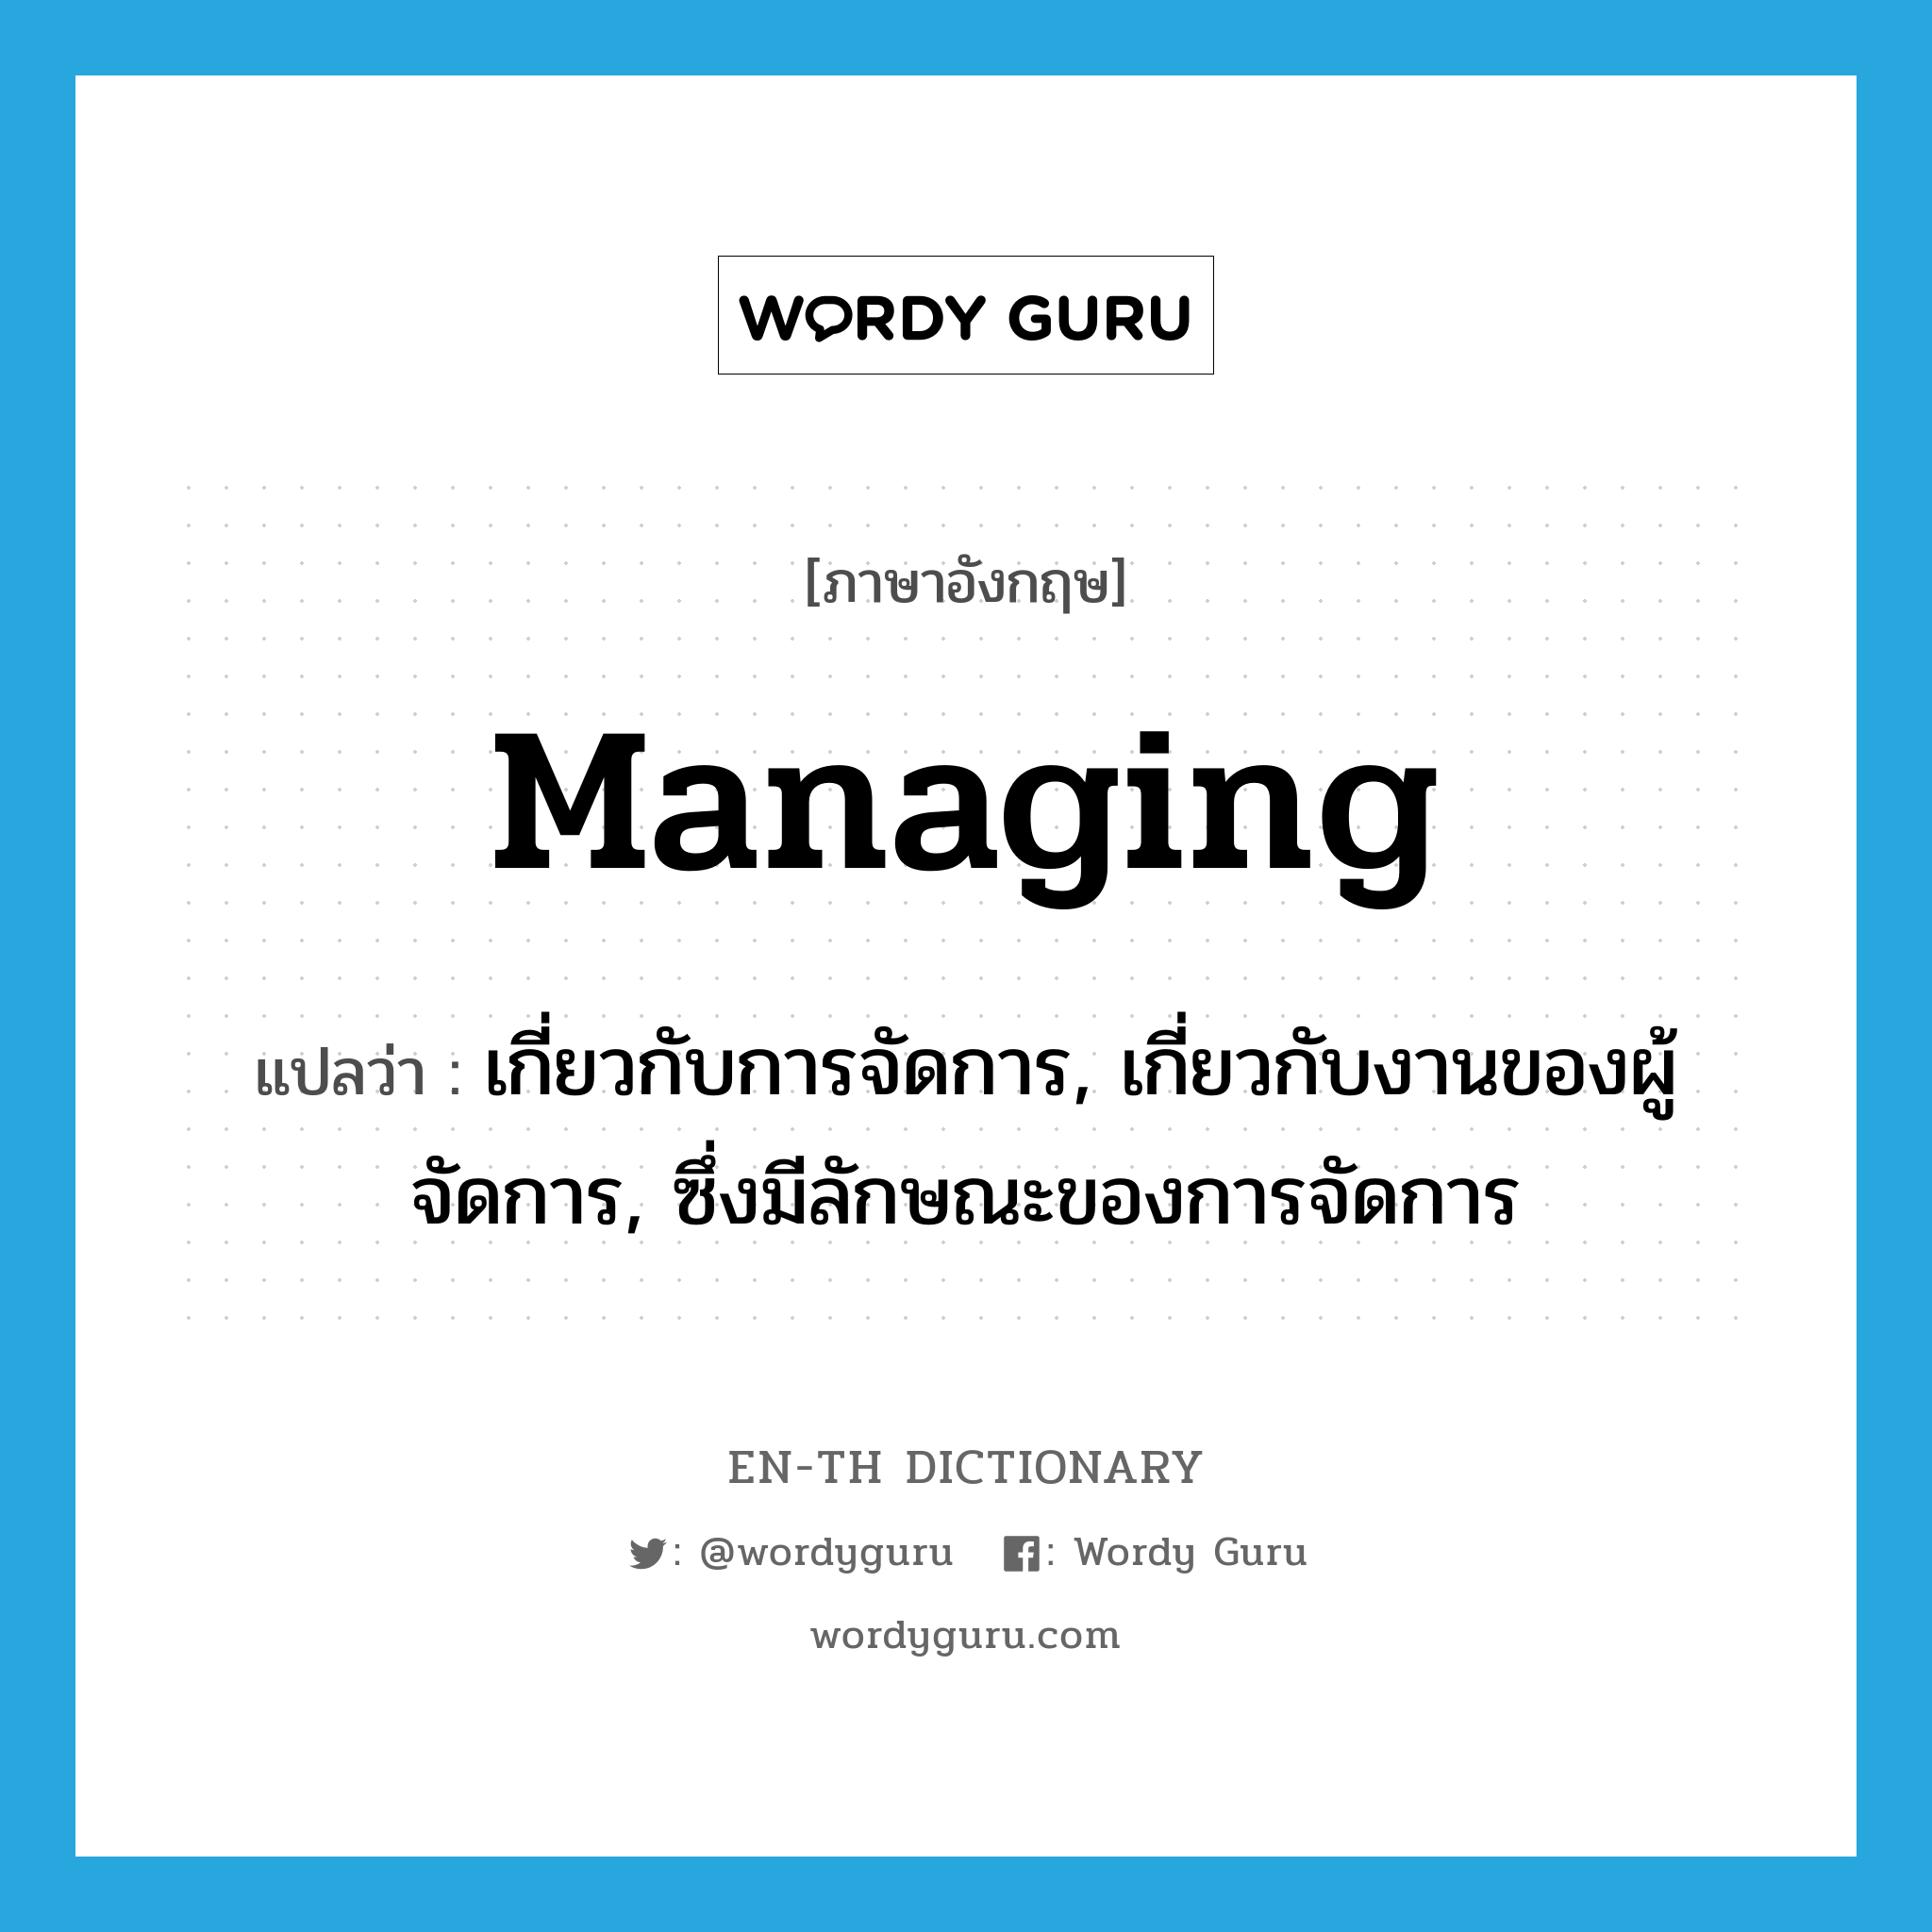 managing แปลว่า?, คำศัพท์ภาษาอังกฤษ managing แปลว่า เกี่ยวกับการจัดการ, เกี่ยวกับงานของผู้จัดการ, ซึ่งมีลักษณะของการจัดการ ประเภท ADJ หมวด ADJ